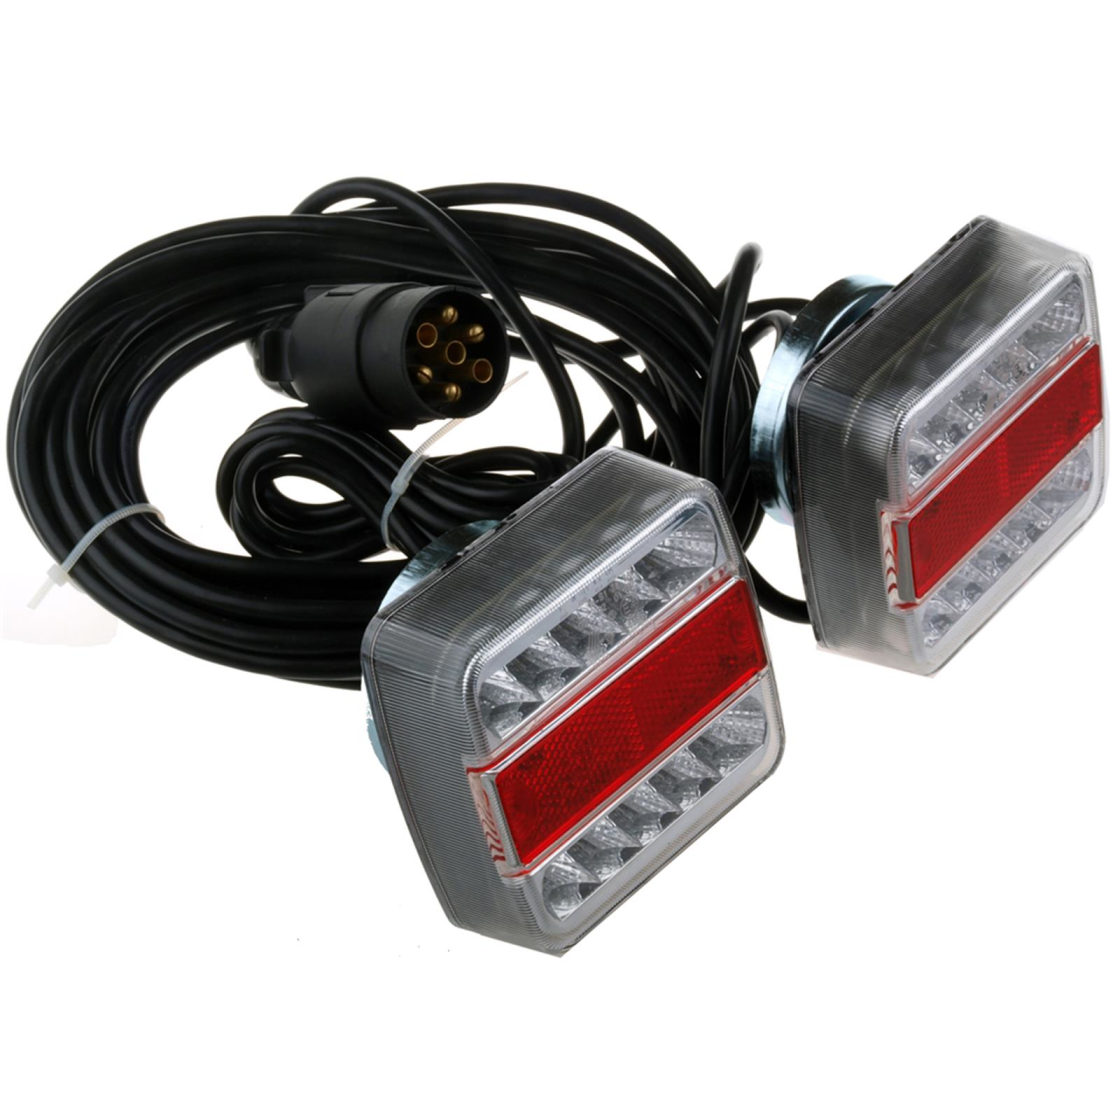 LED Anhänger Rückleuchten komplett verkabelt - inkl. Magnethalterung ,  33,95 €